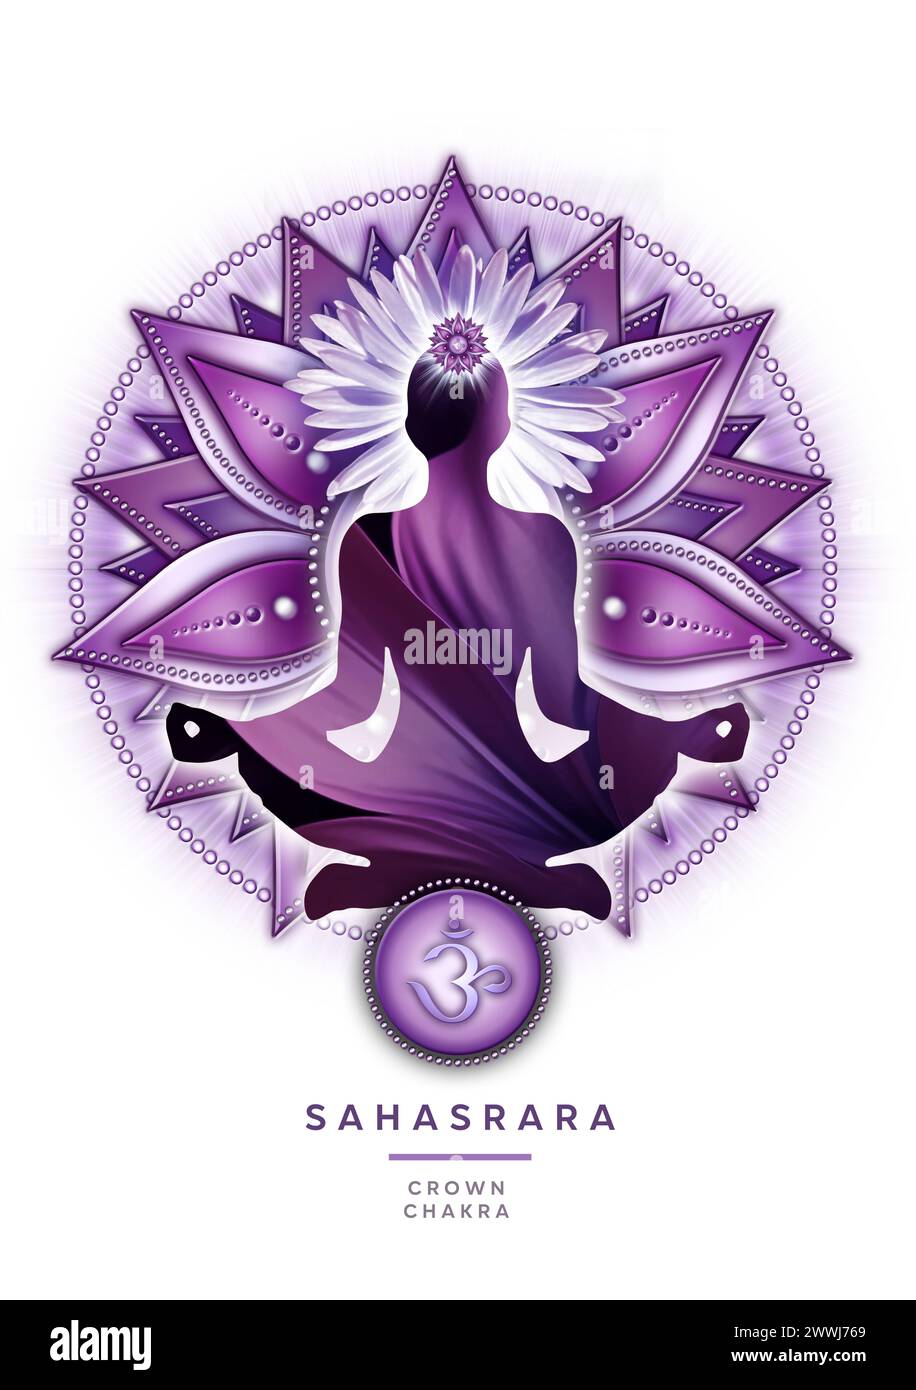 Méditation de chakra couronne dans la pose de yoga lotus, devant le symbole du chakra Sahasrara Banque D'Images